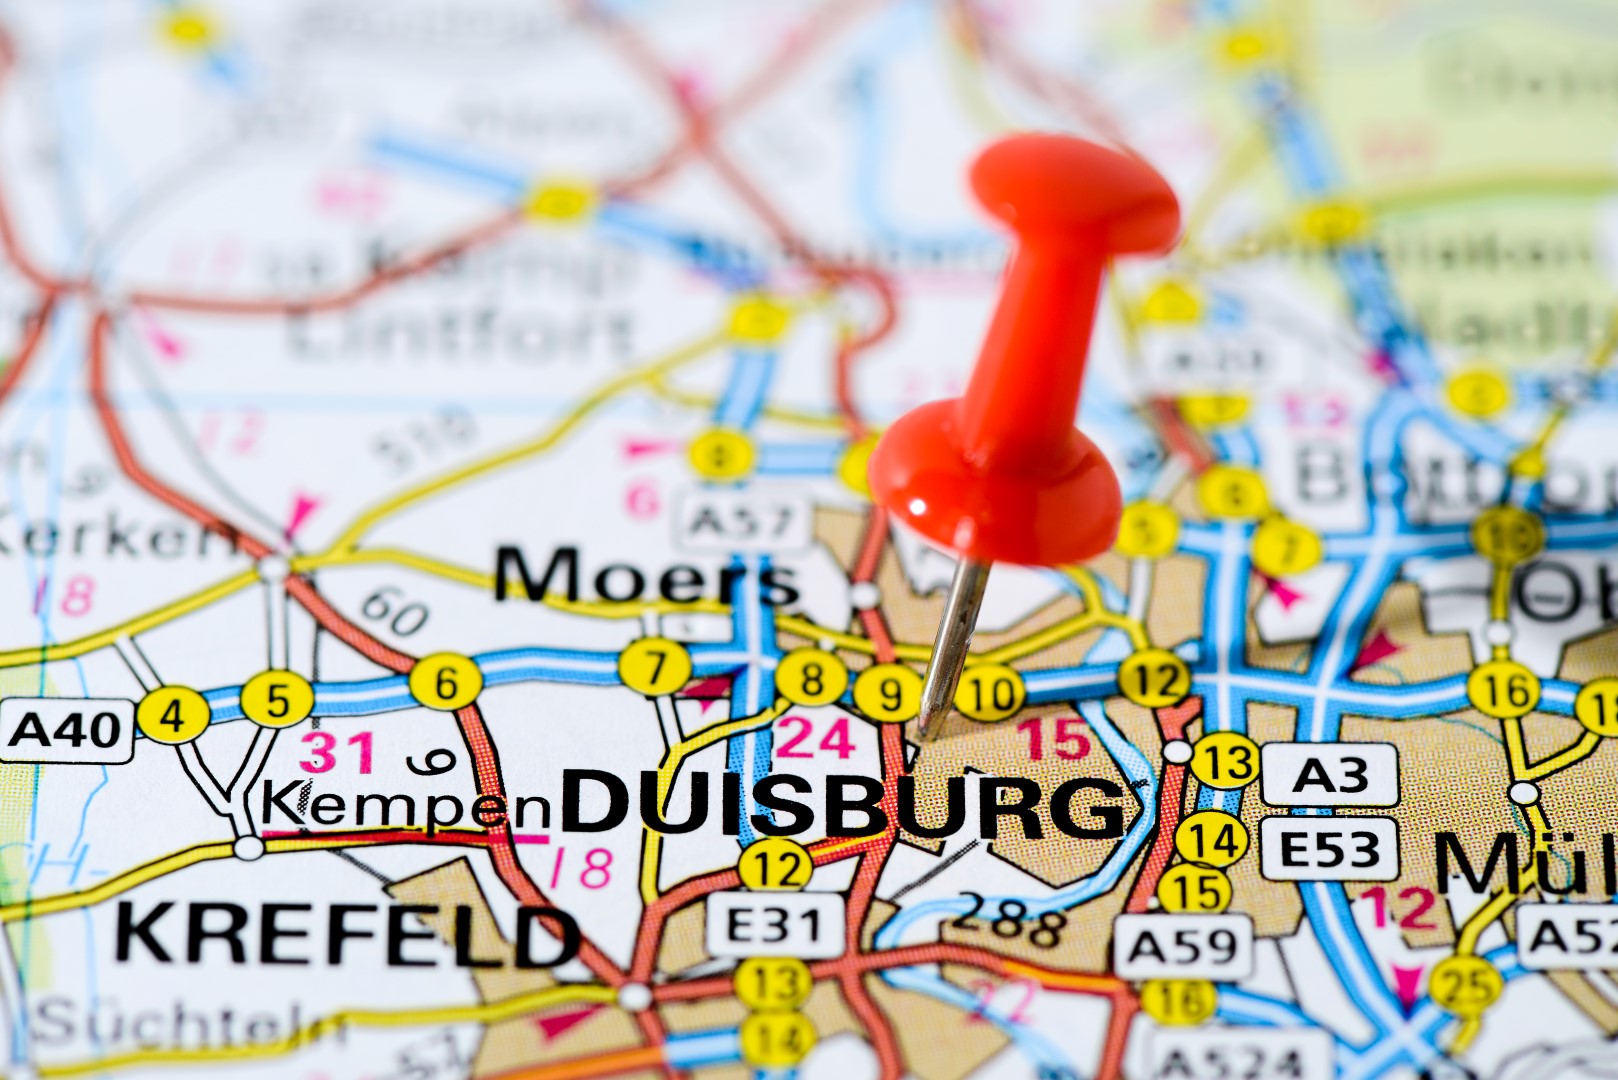 2nd of June 2022: Let’s meet in Duisburg!